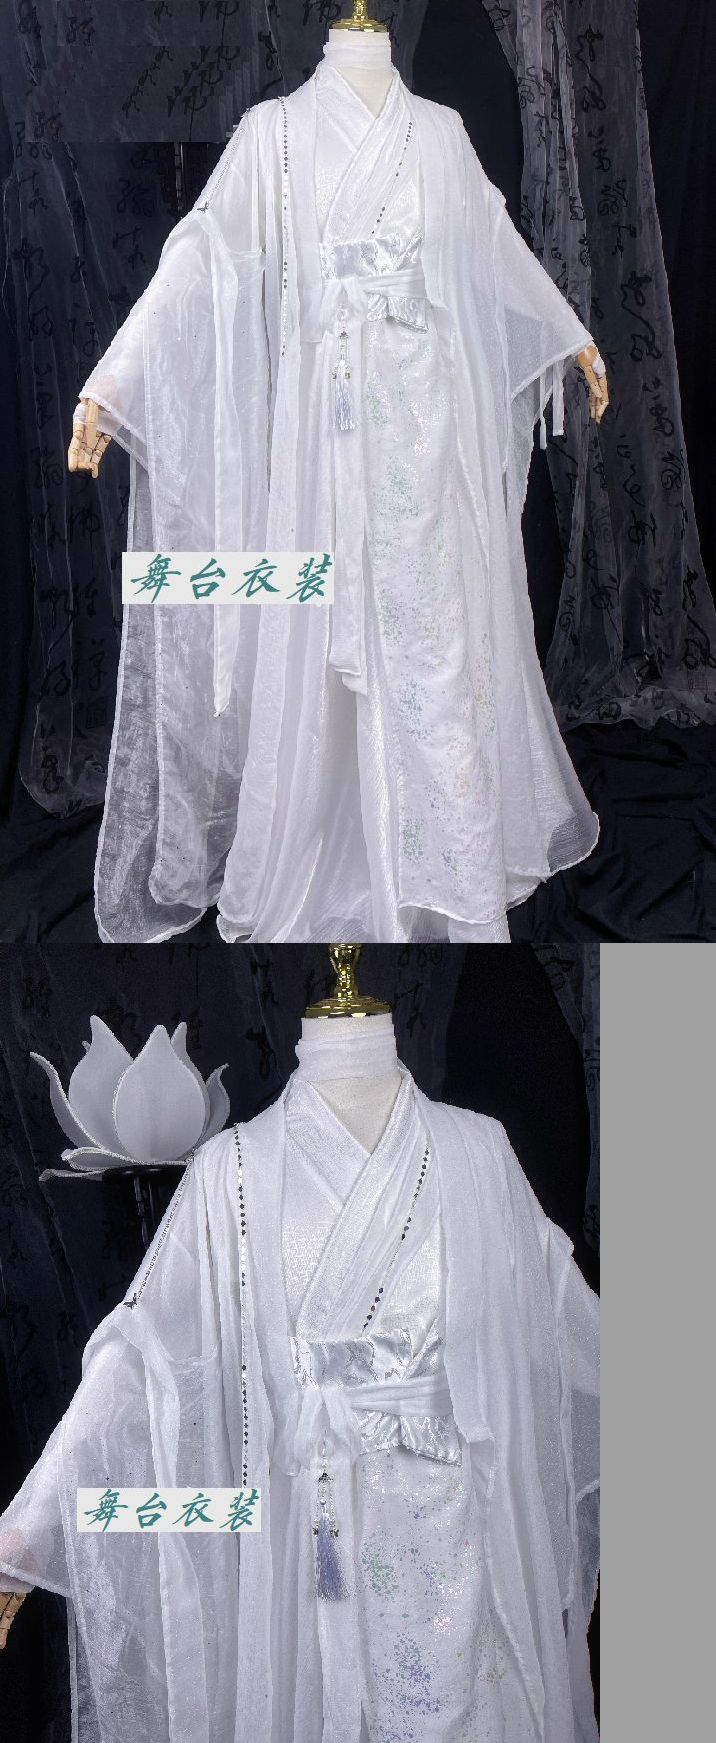 舞台衣装1-7 演劇衣装 舞台 芝居衣装「夢屋ドレス熊本 日本対外貿易」